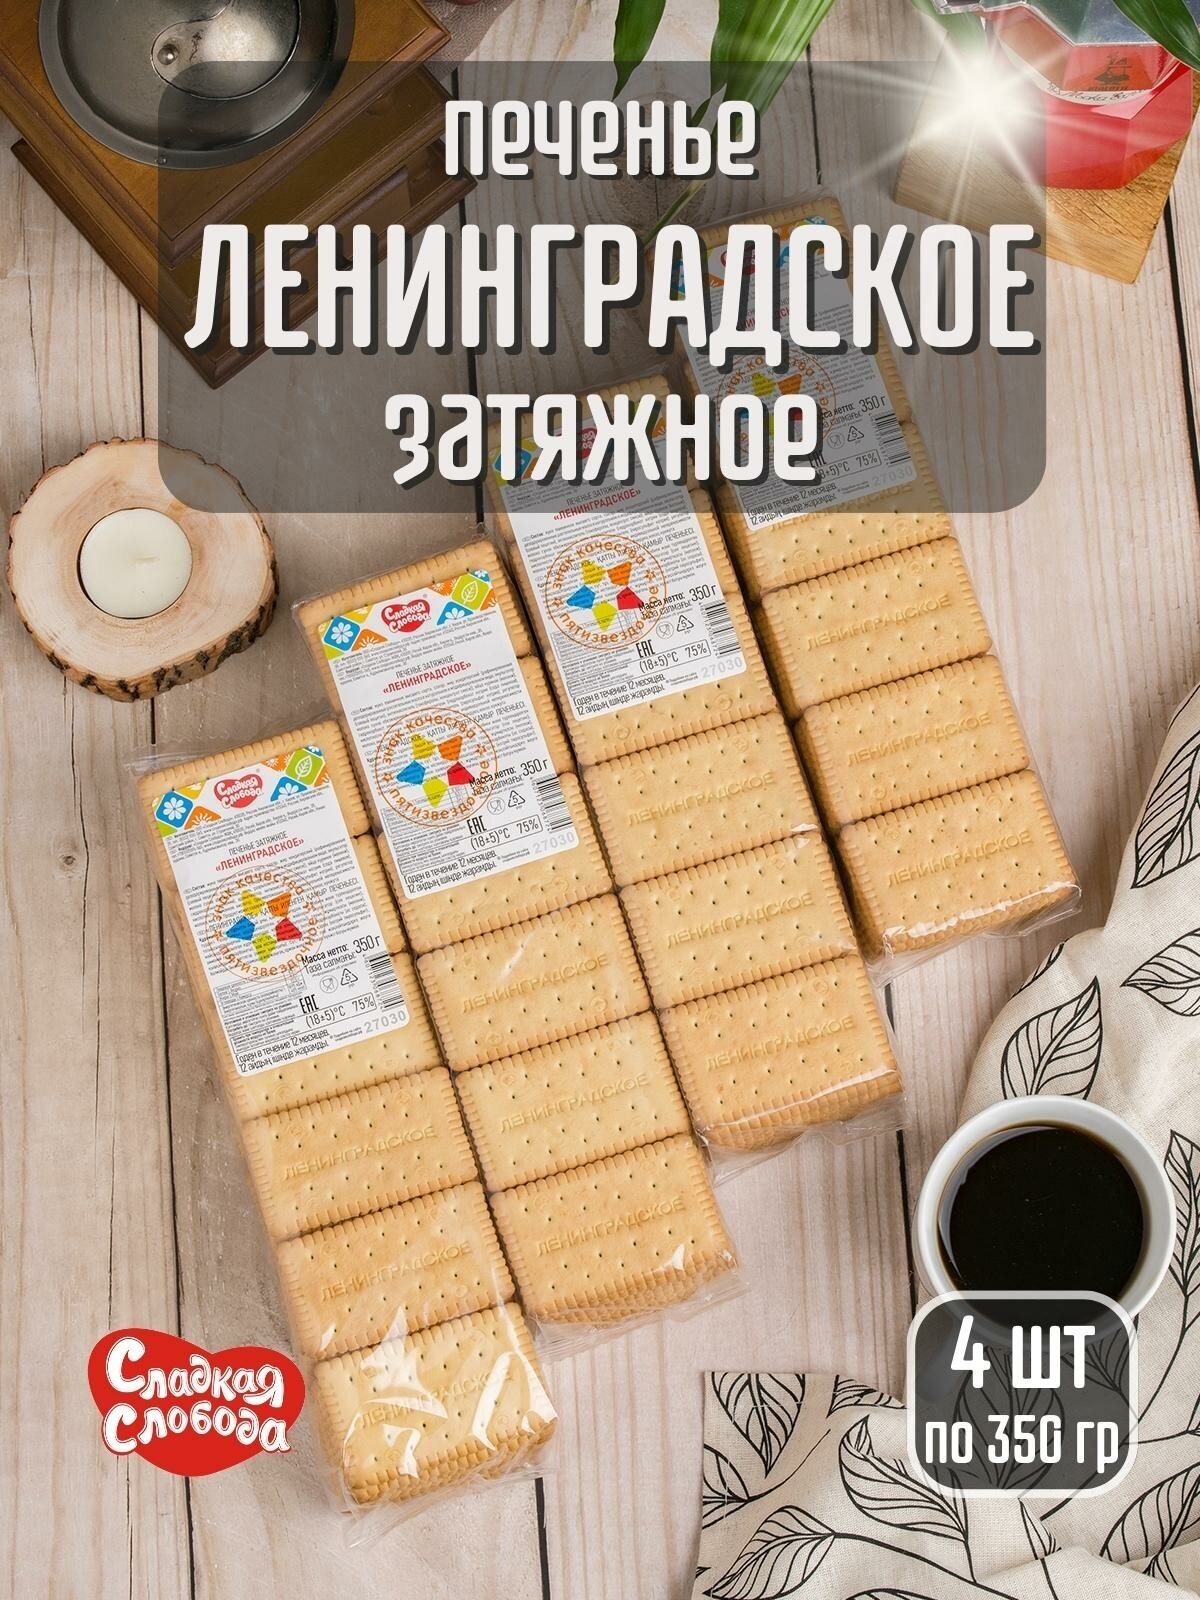 Печенье затяжное ленинградское , 4 шт по 350 гр